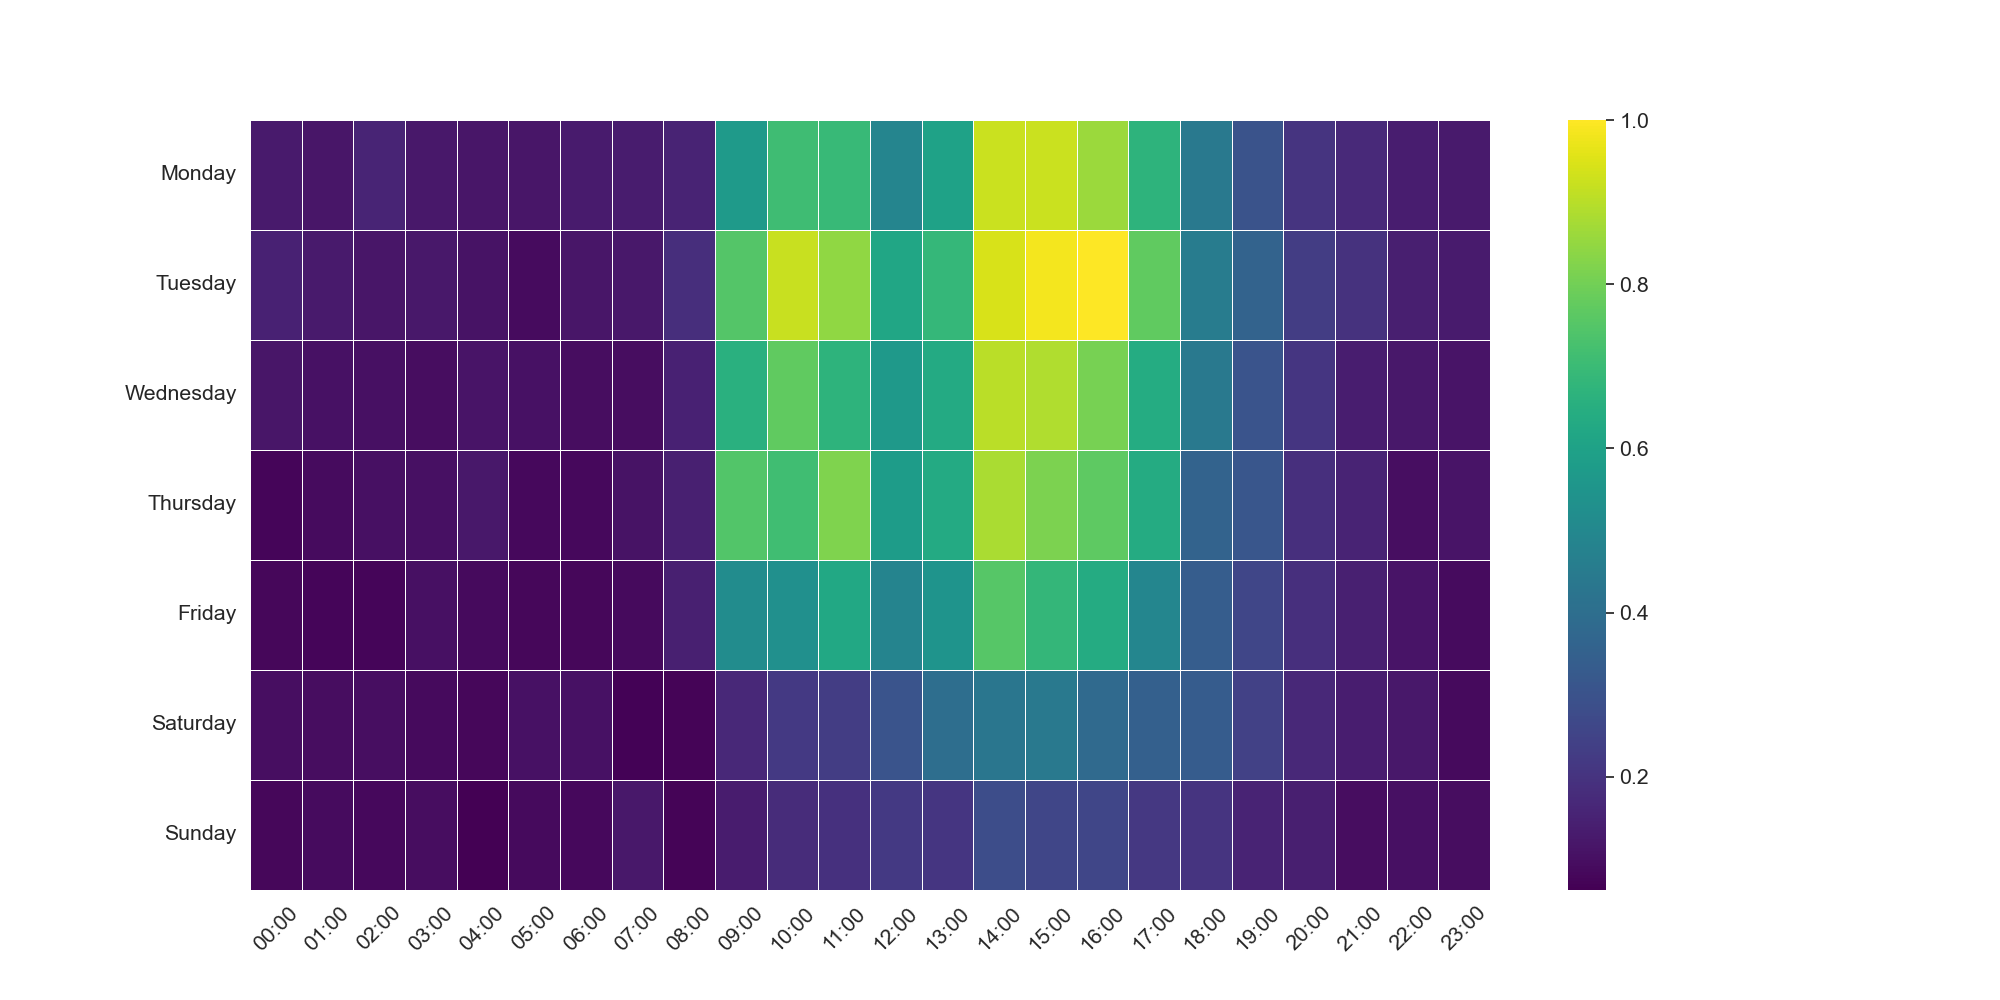 画像 3 は、中国標準時に調整された生活パターンのヒート マップです。縦軸には、月曜日を先頭にして日曜日で終わる曜日がリストされています。横軸は時間を 24 時間表記で示したものです。このヒート マップは、活動していない時間帯 (濃い紫色) から活動している時間帯 (緑がかった黄色) への変化を示します。したがって、脅威アクターは月曜〜金曜の午前 8 時〜午後 17 時まで活動していることが示されています。 